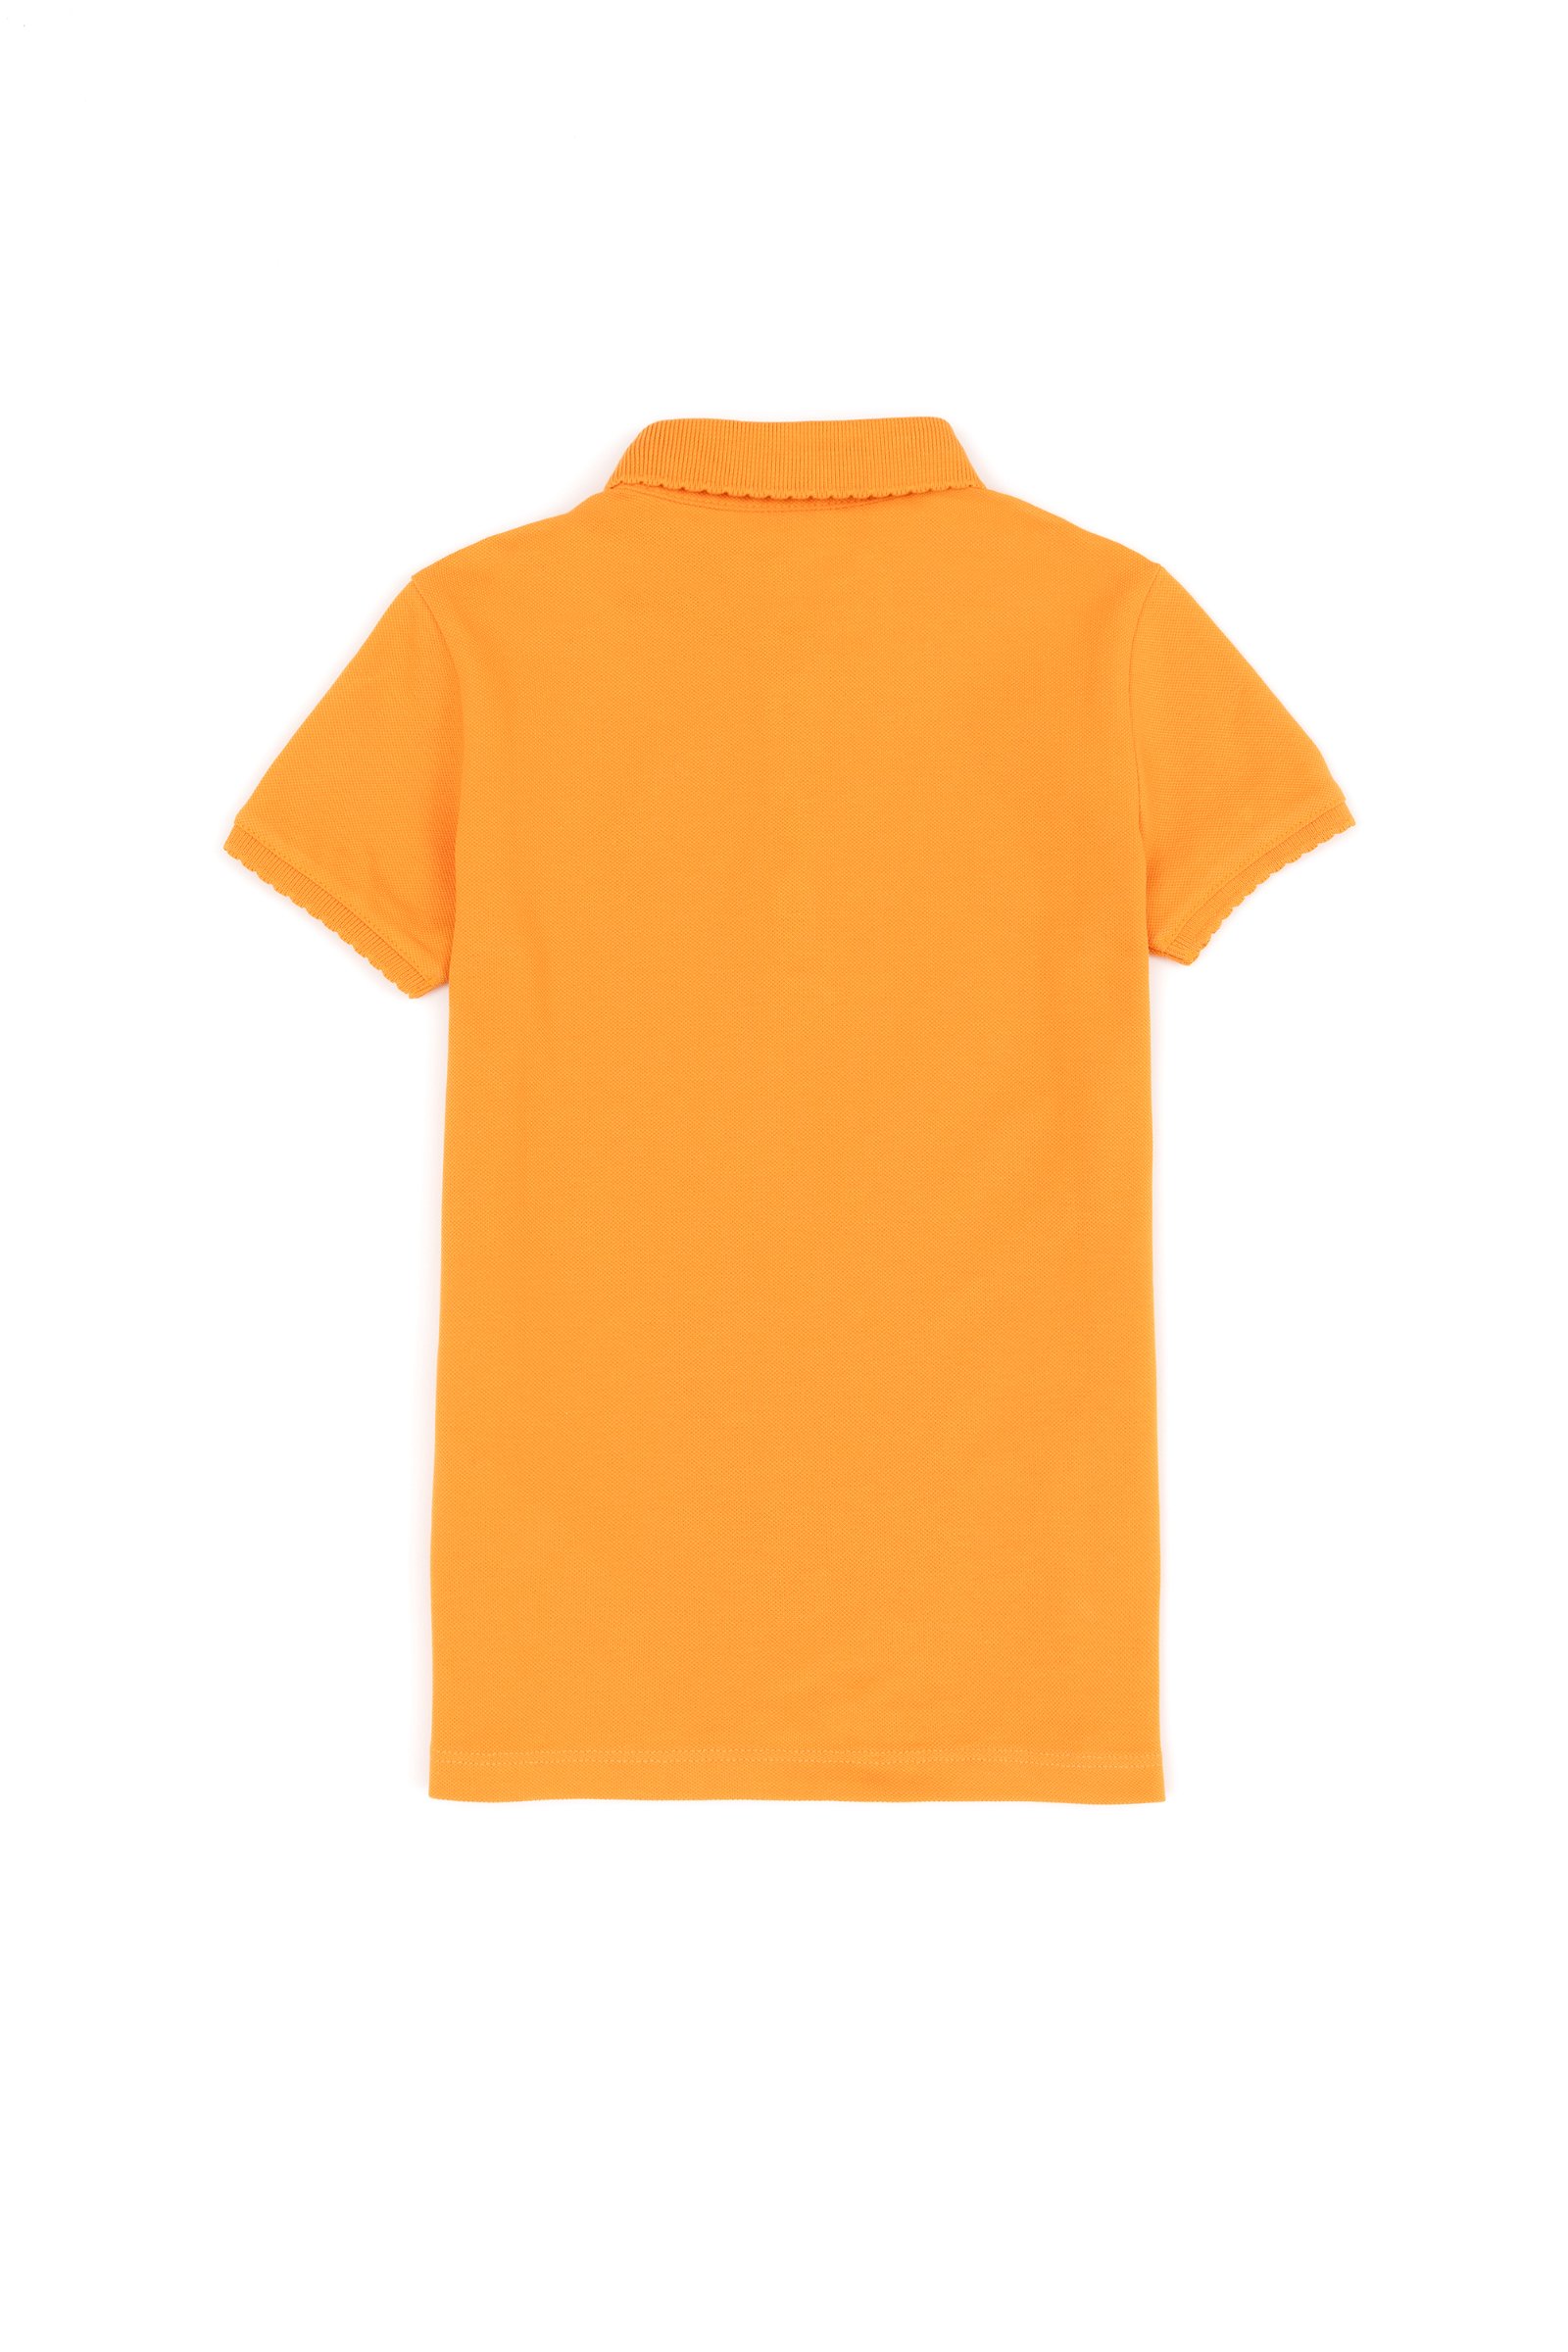 تی شرت  زرد تیره  استاندارد فیت  دخترانه یو اس پولو | US POLO ASSN